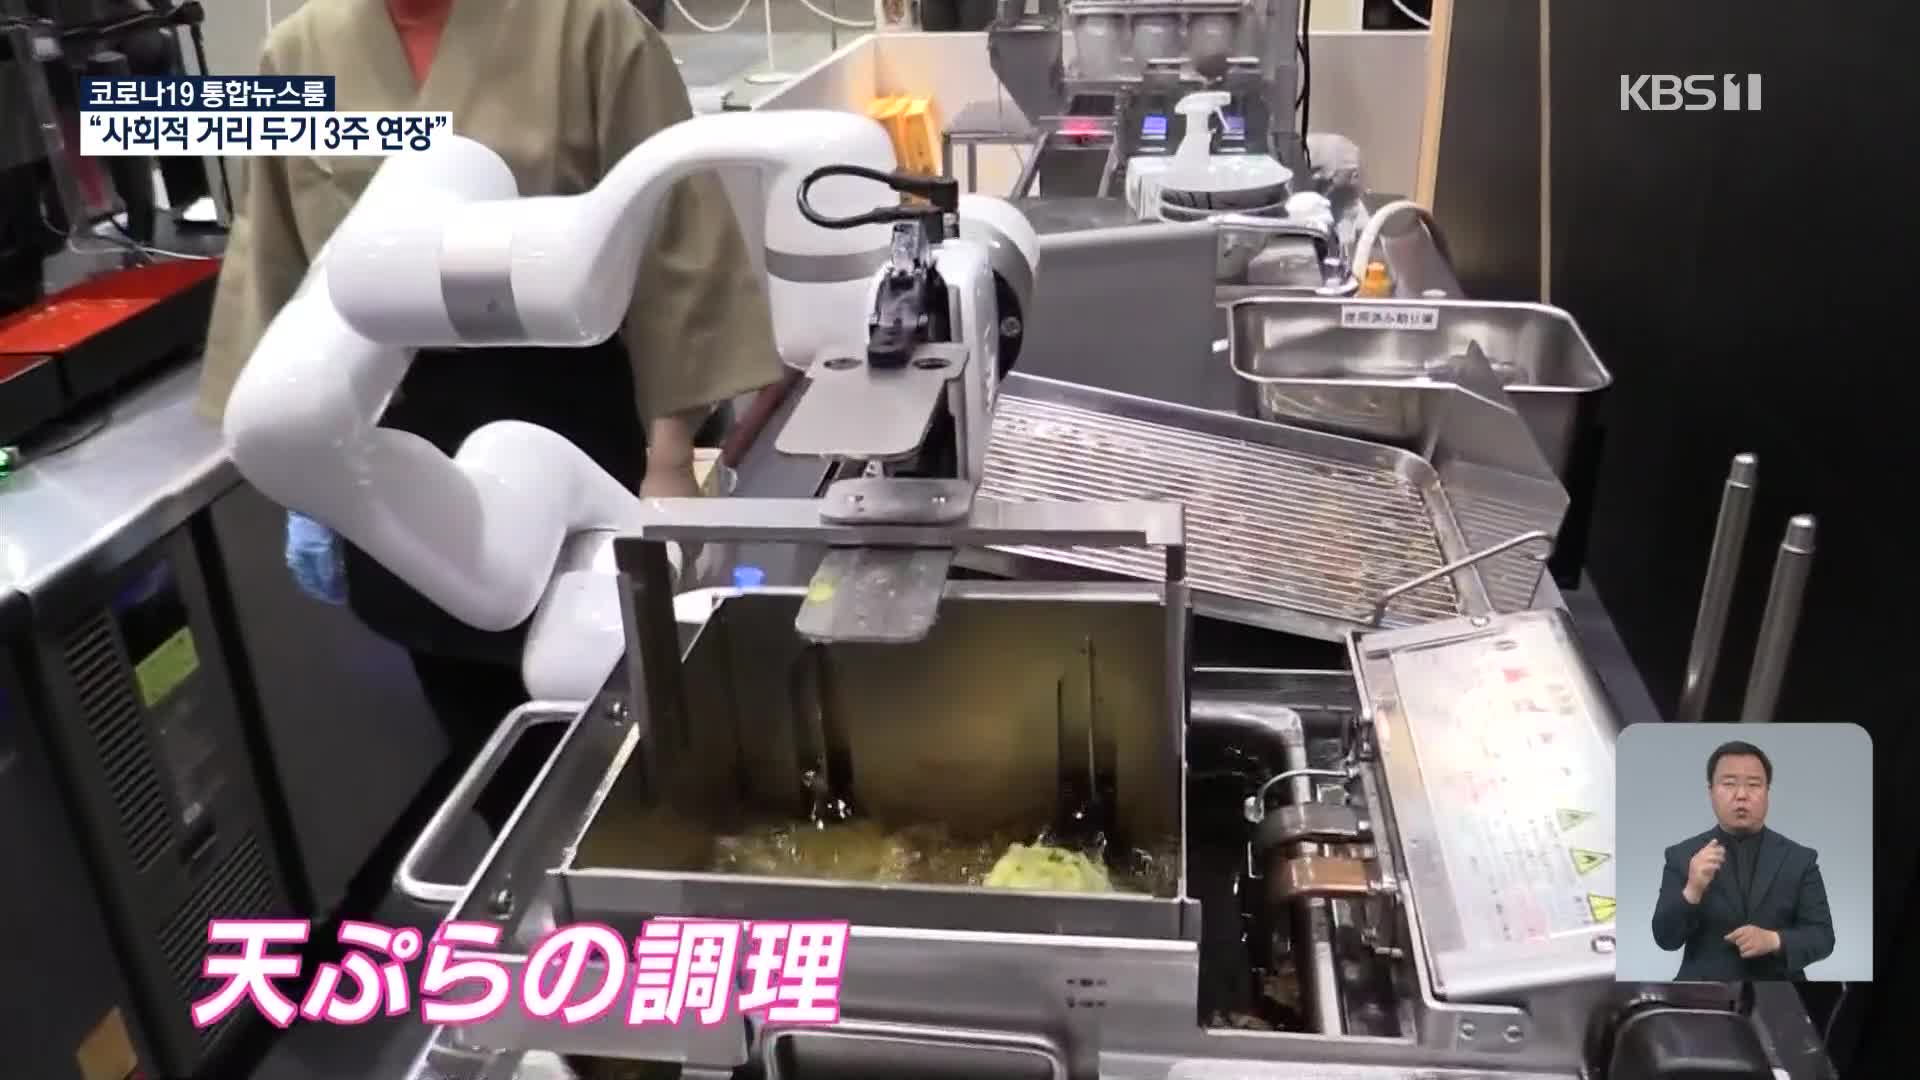 혼자서도 잘해요!…일본서 음식점용 로봇 개발